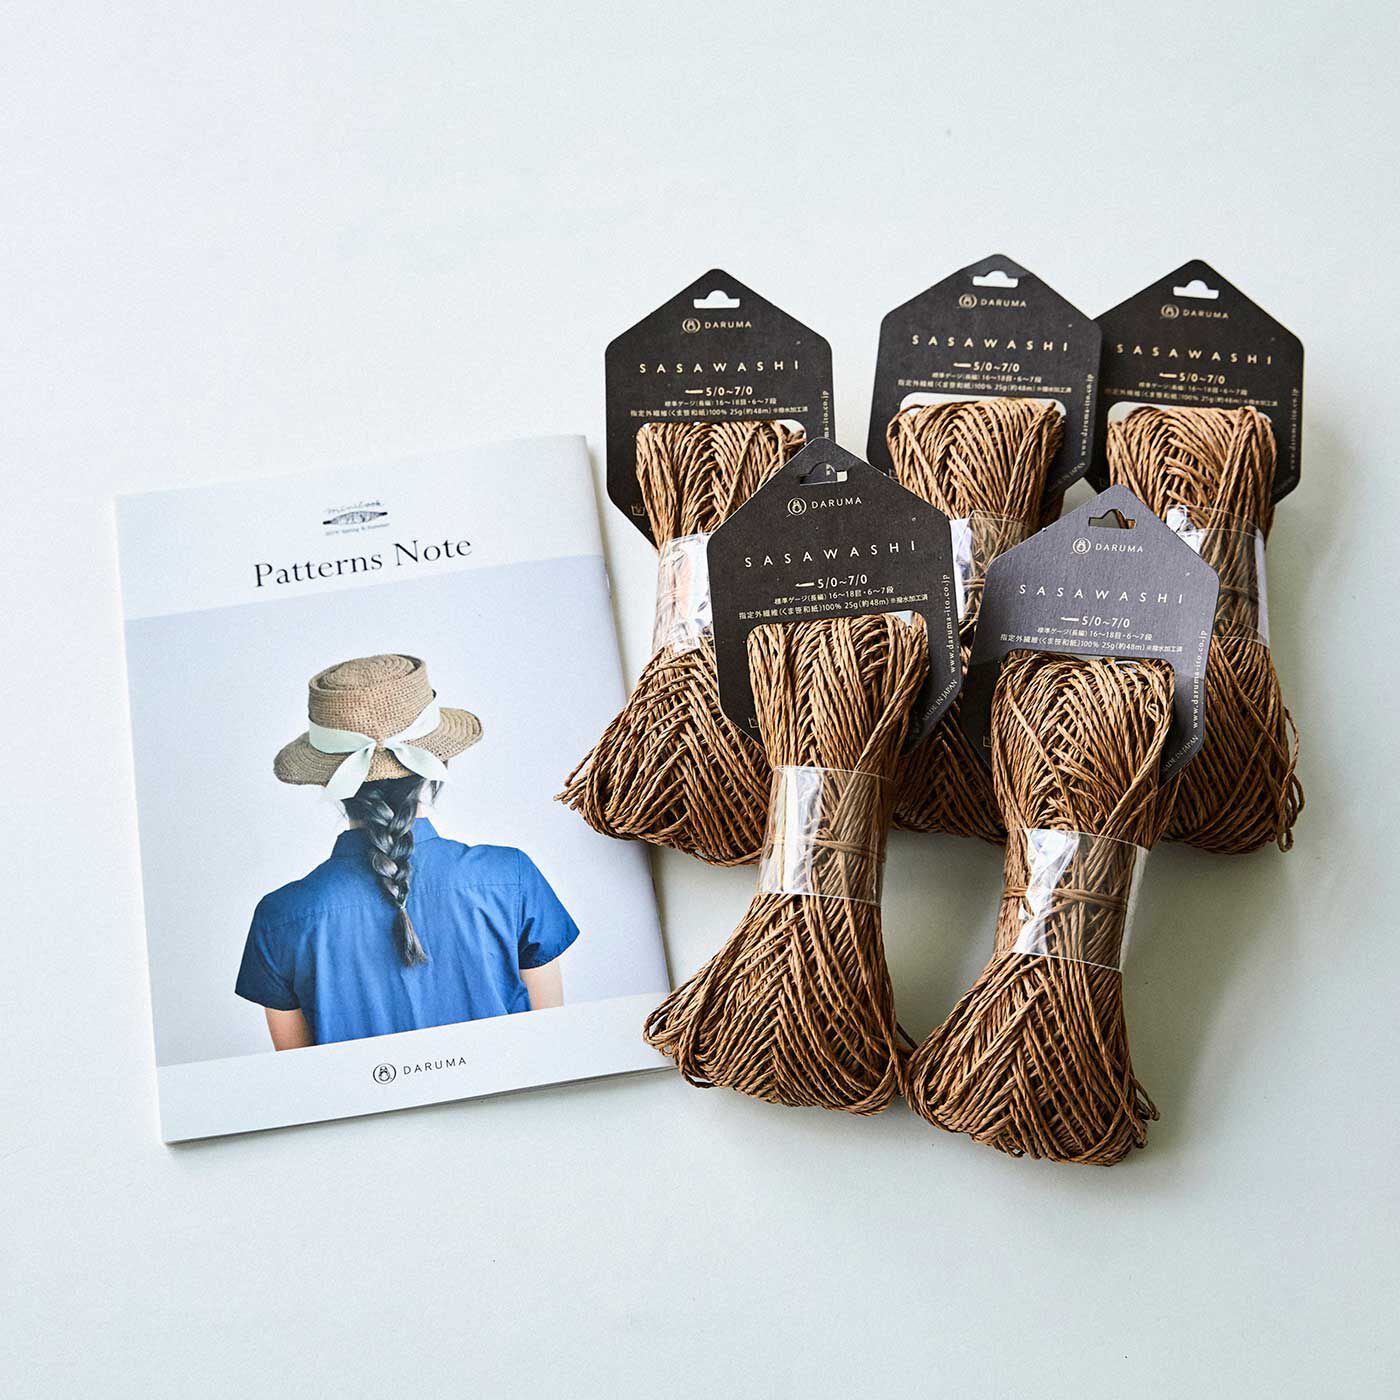 Couturier special|帽子が編める　ナチュラルカラーのＳＡＳＡＷＡＳＨＩ糸とミニブック「ＰａｔｔｅｒｎｓＮｏｔｅ」|●小冊子「PatternsNote」とSASAWASHI5玉をセットでお届け。